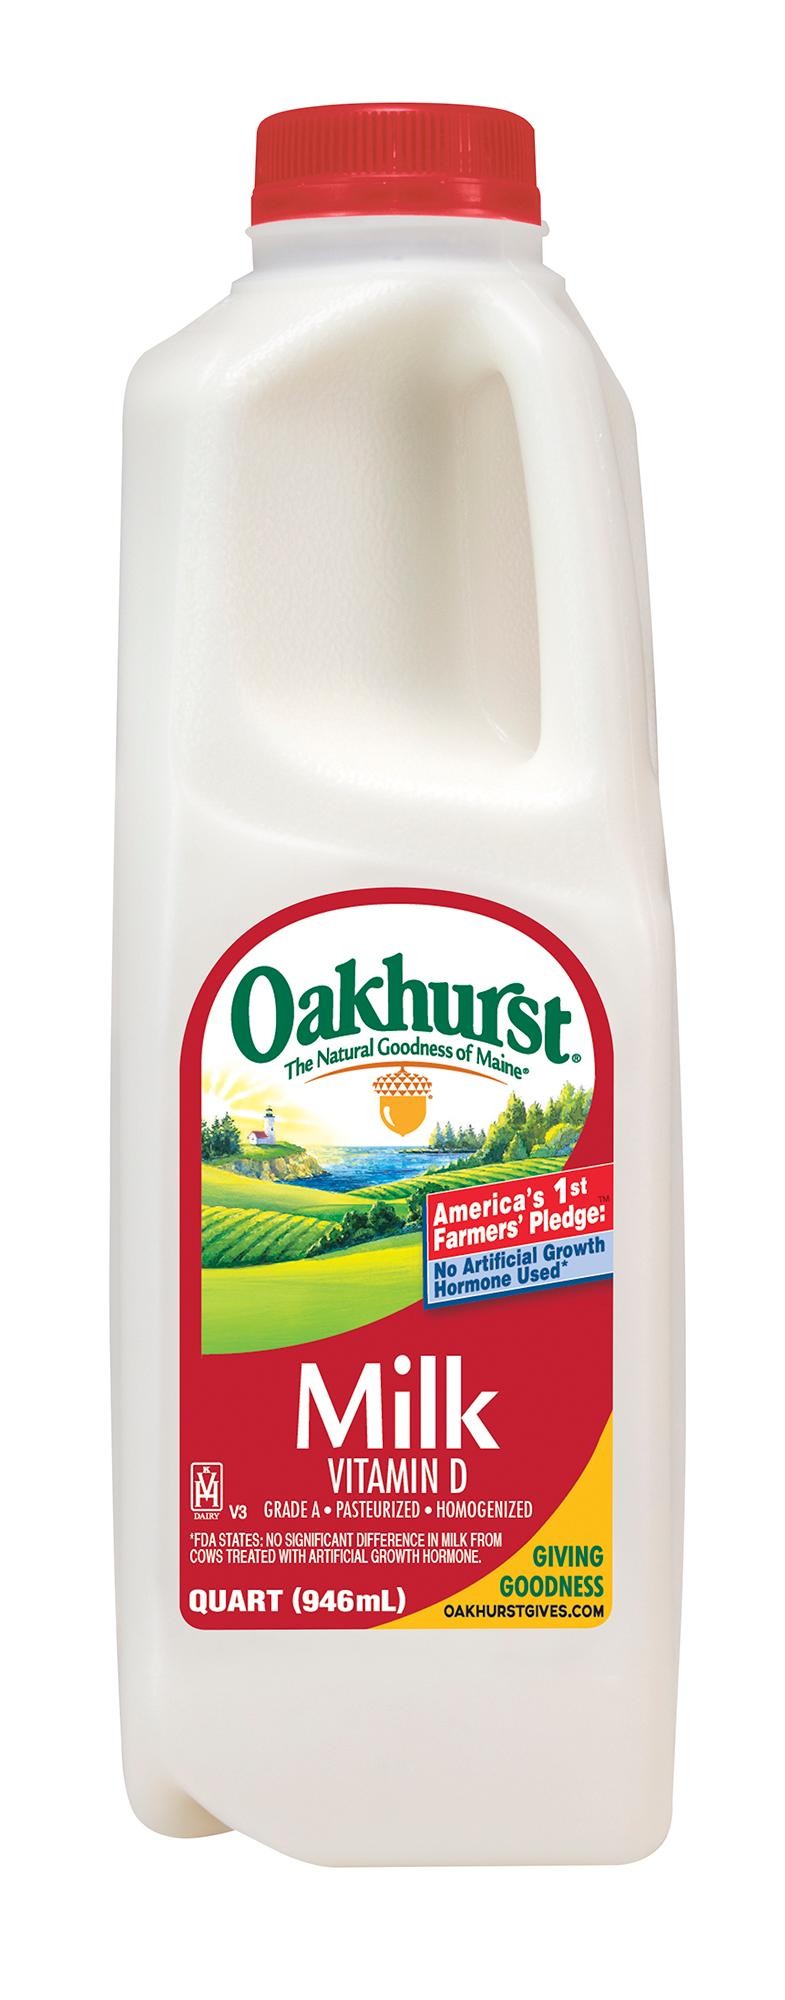 Oakhurst milk homo quart